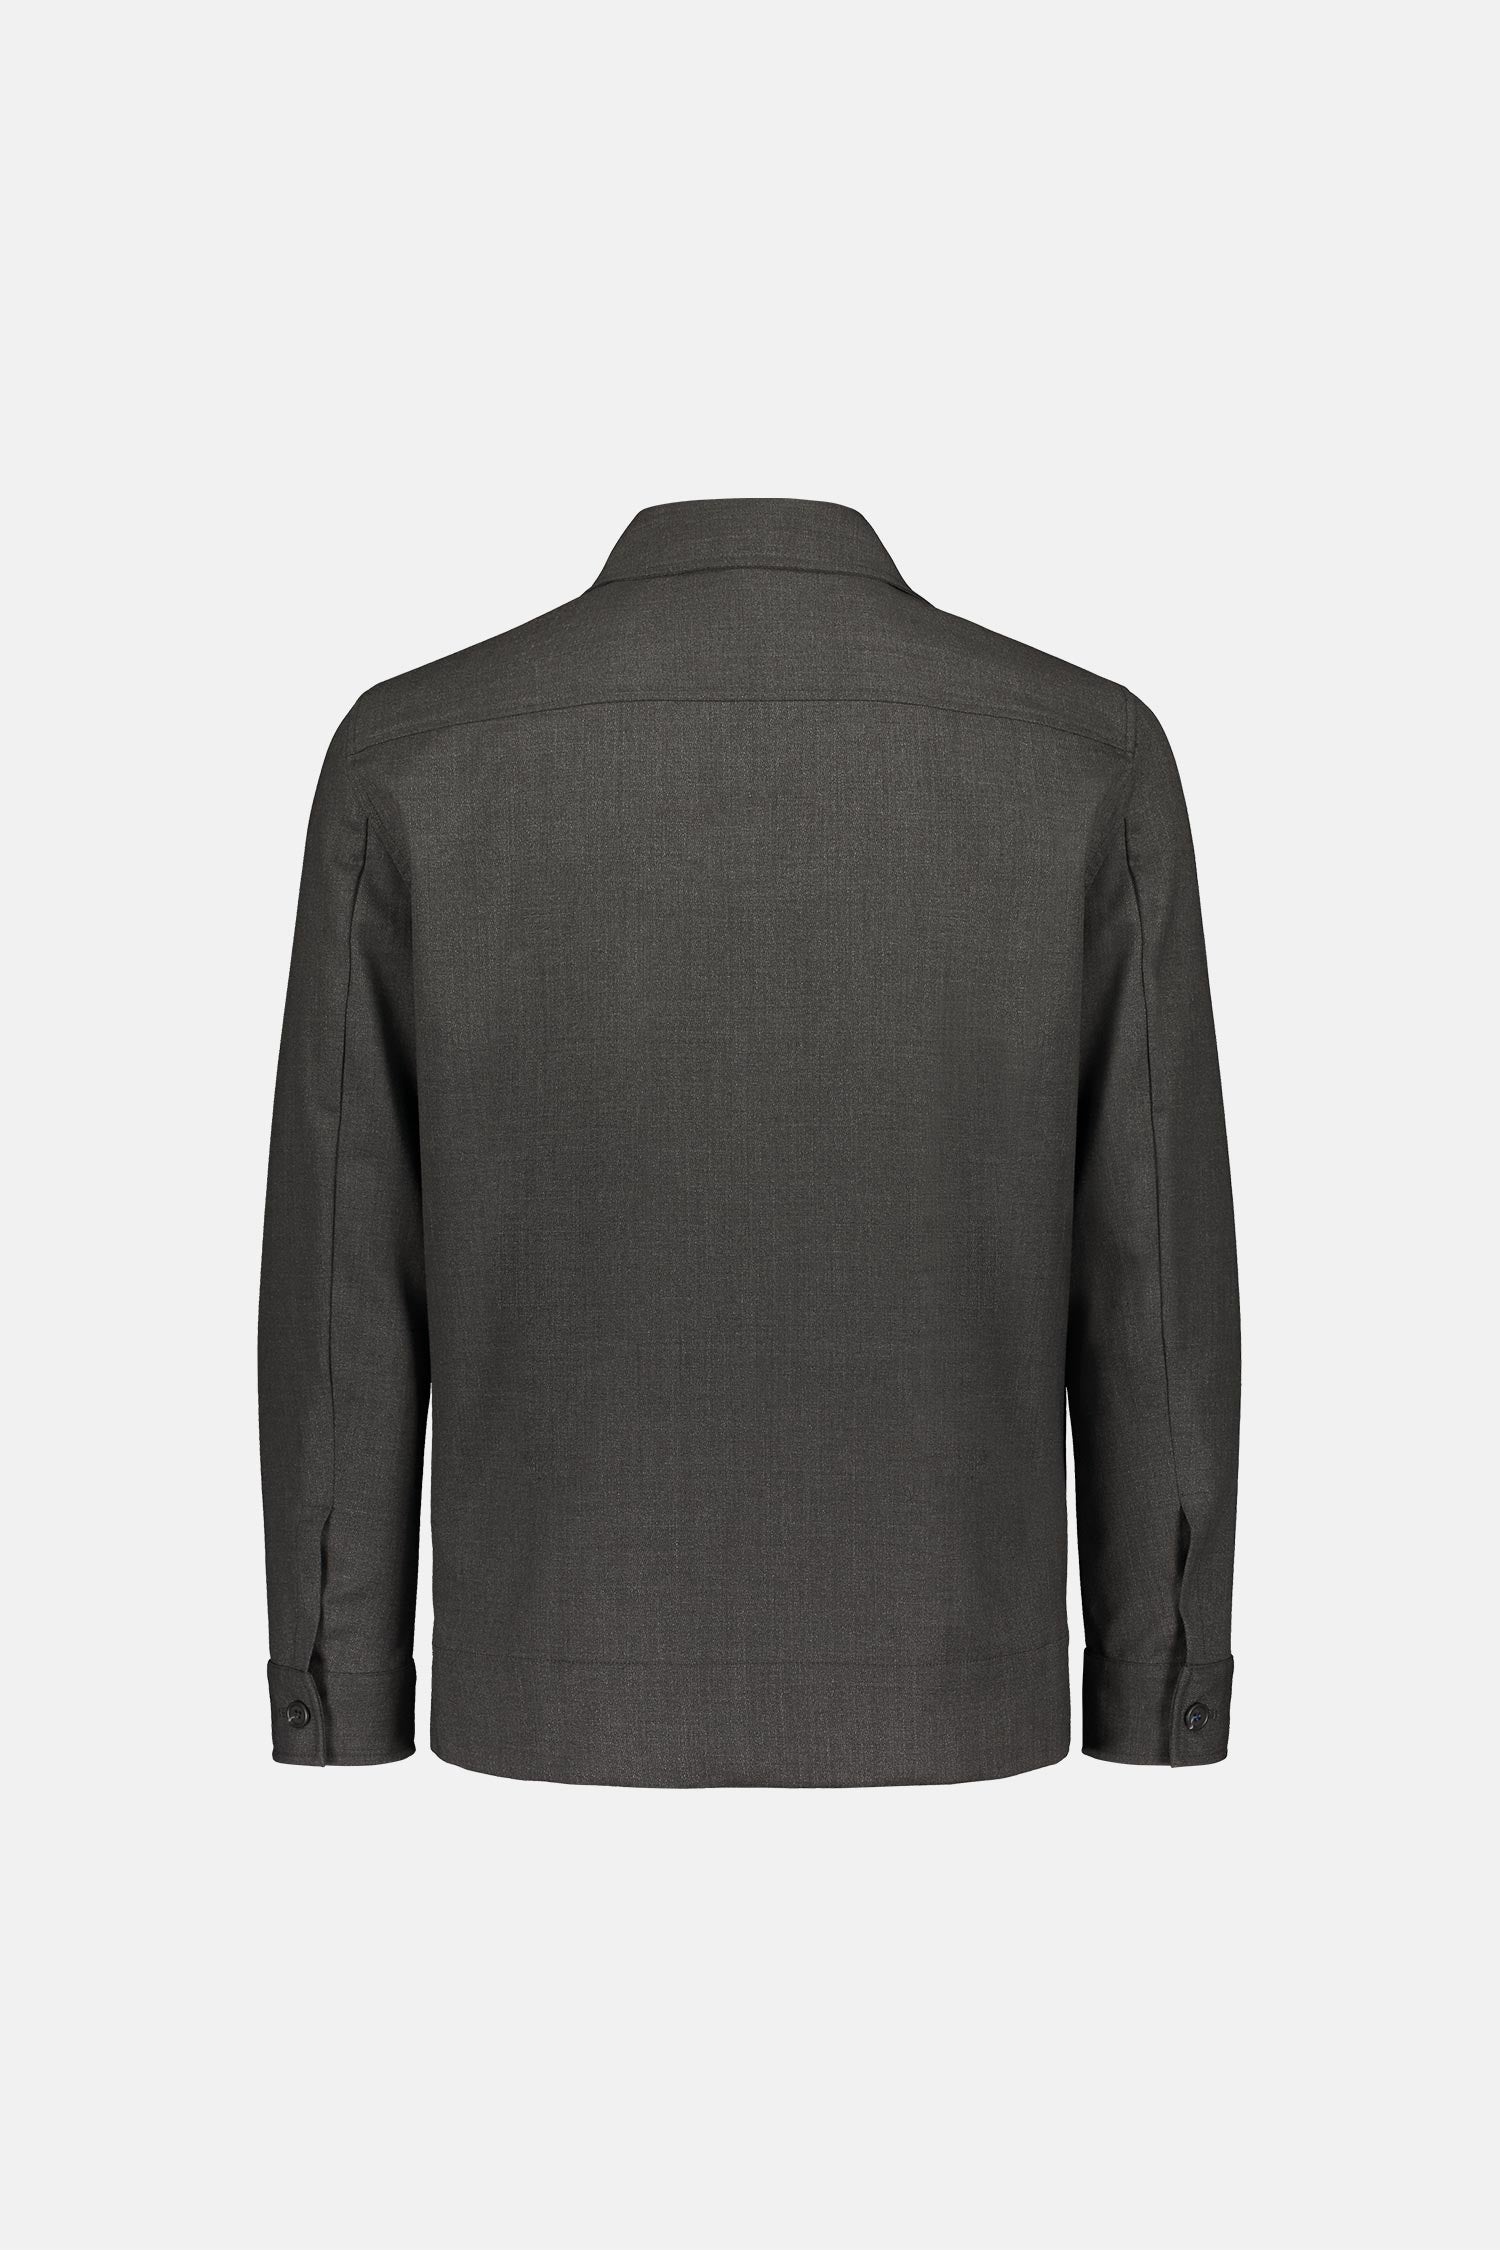 Frenn Jesse sustainable premium quality machine washable wool overshirt grey